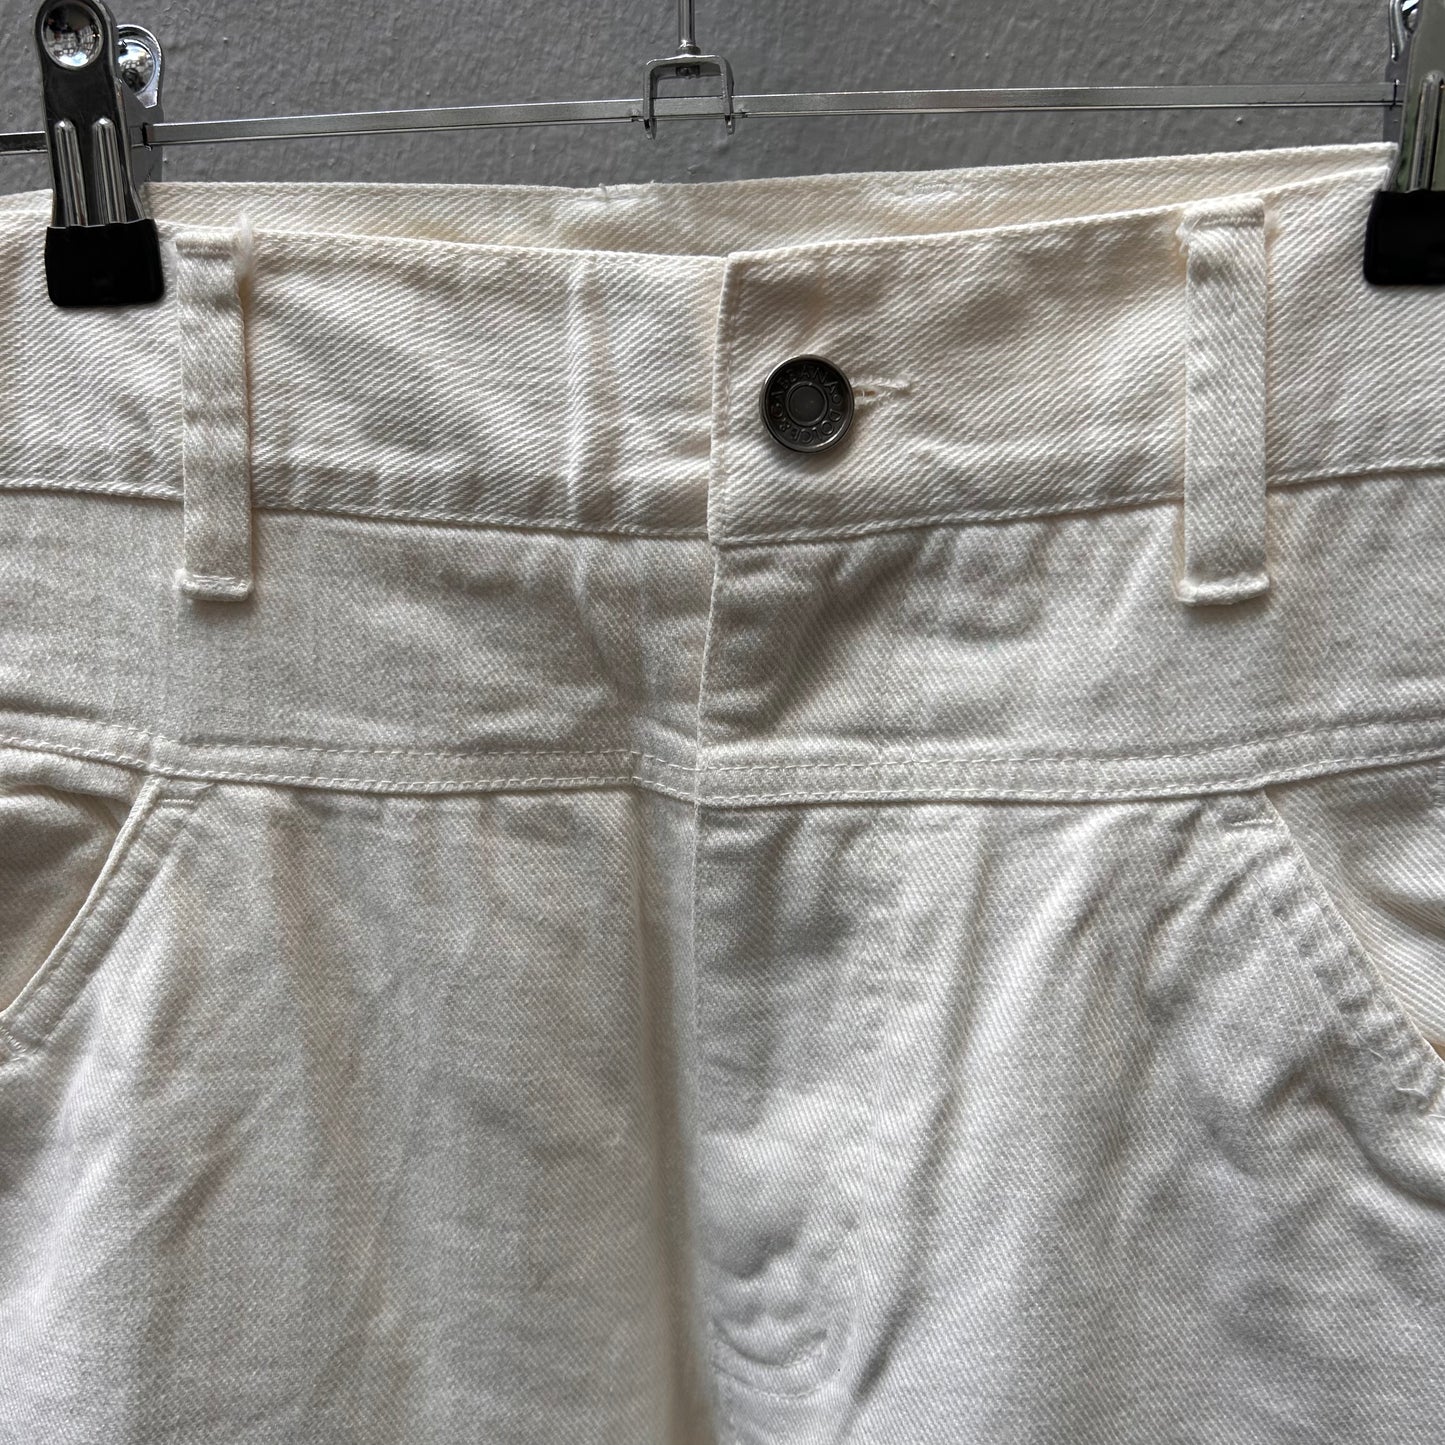 Dolce&Gabbana White Pants